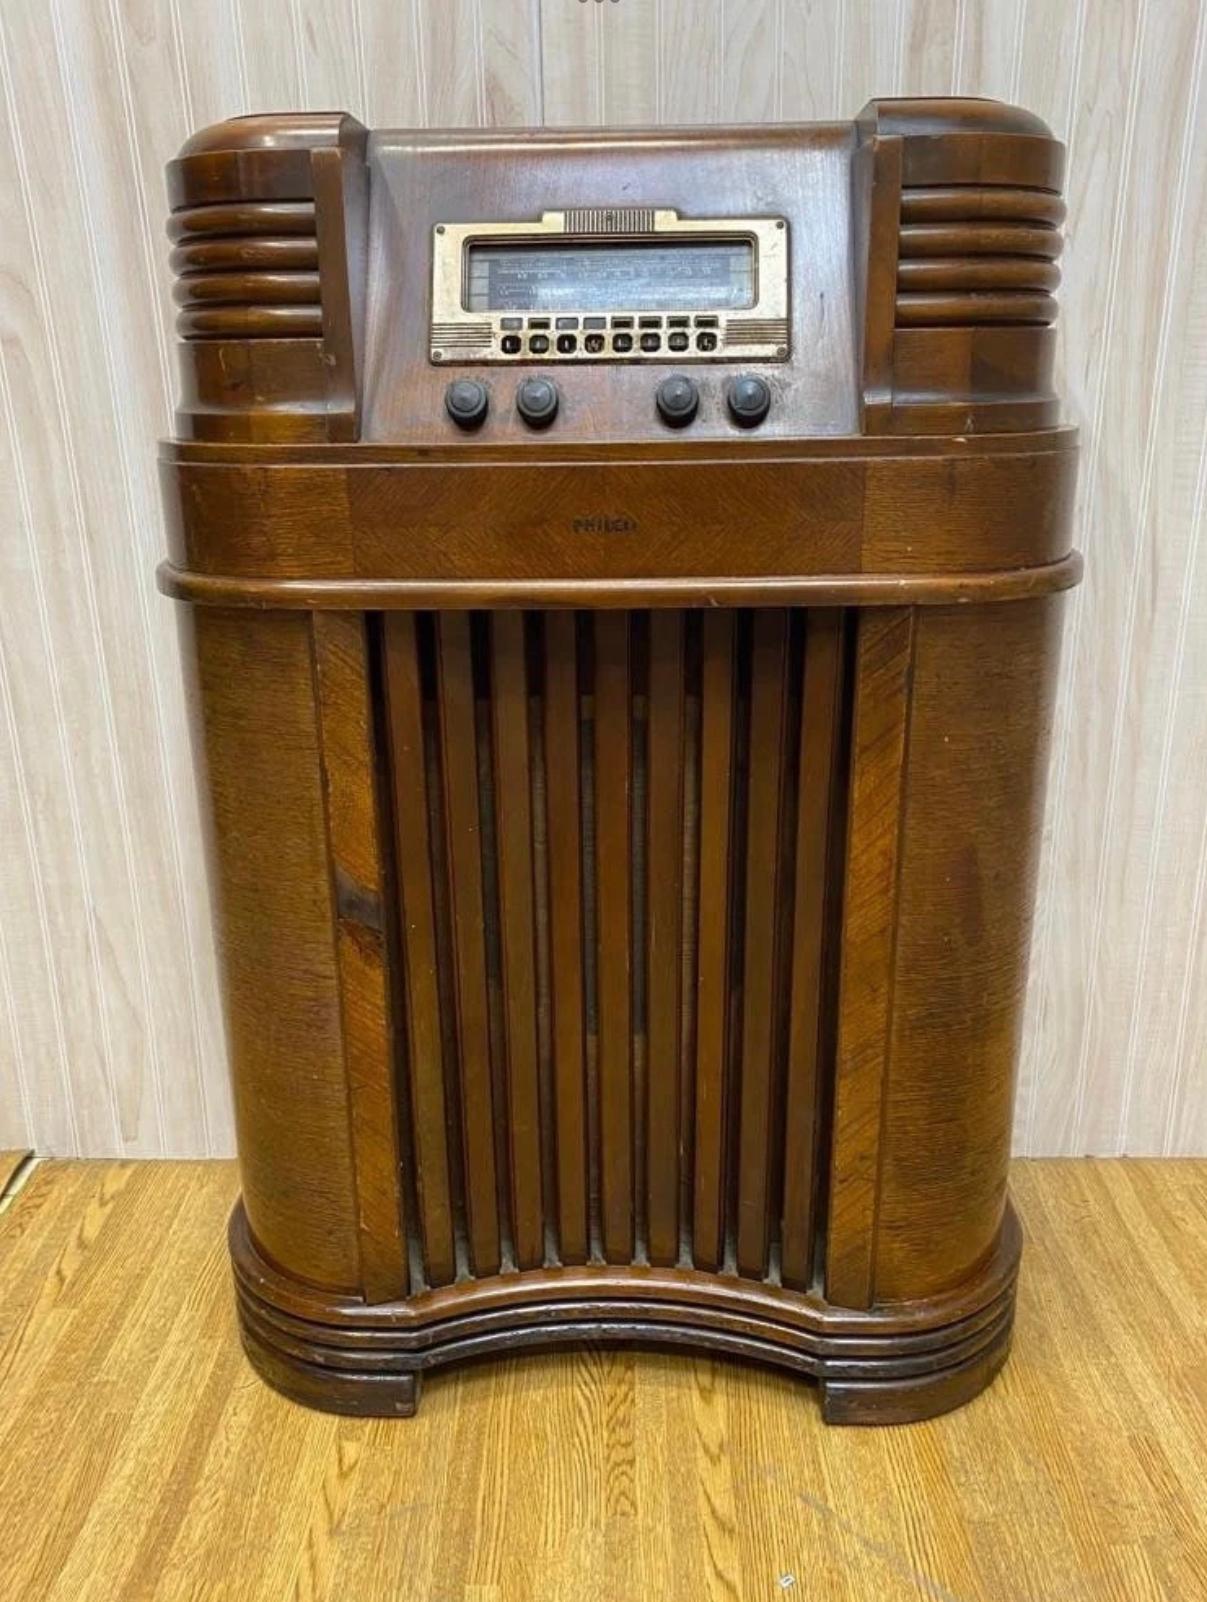 Antikes Philco 40-180 Konsole Bodenradio 

Das Radio ist eingeschaltet. 

CIRCA: 1940

Abmessungen:
H: 40